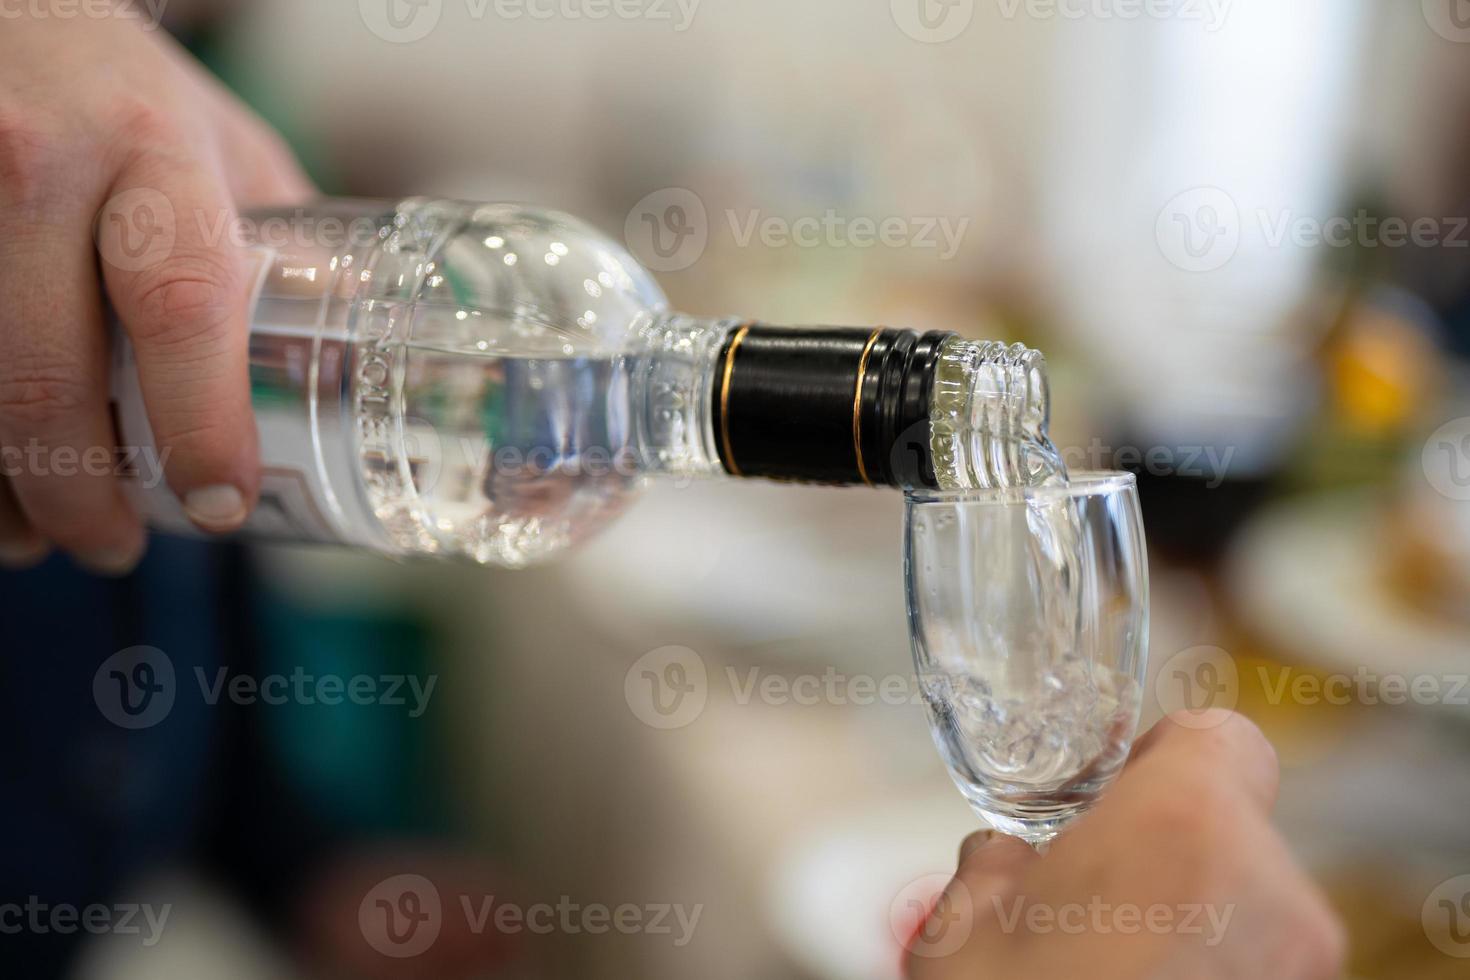 o garçom serve uma bebida alcoólica, vodka em um copo. foto